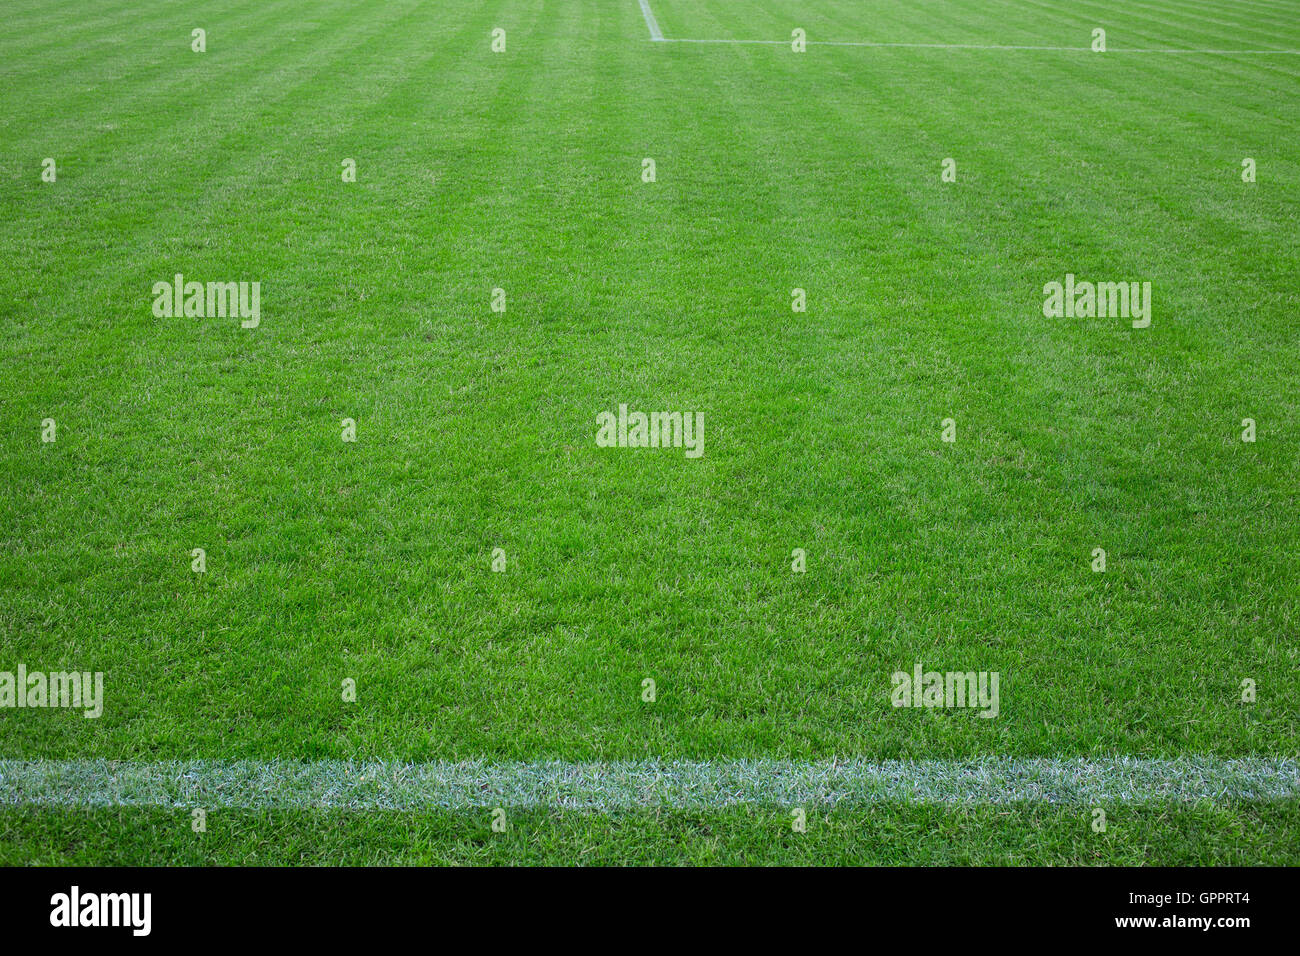 Fußballplatz mit grünem Rasen und horizontale weiße Linie Stockfoto